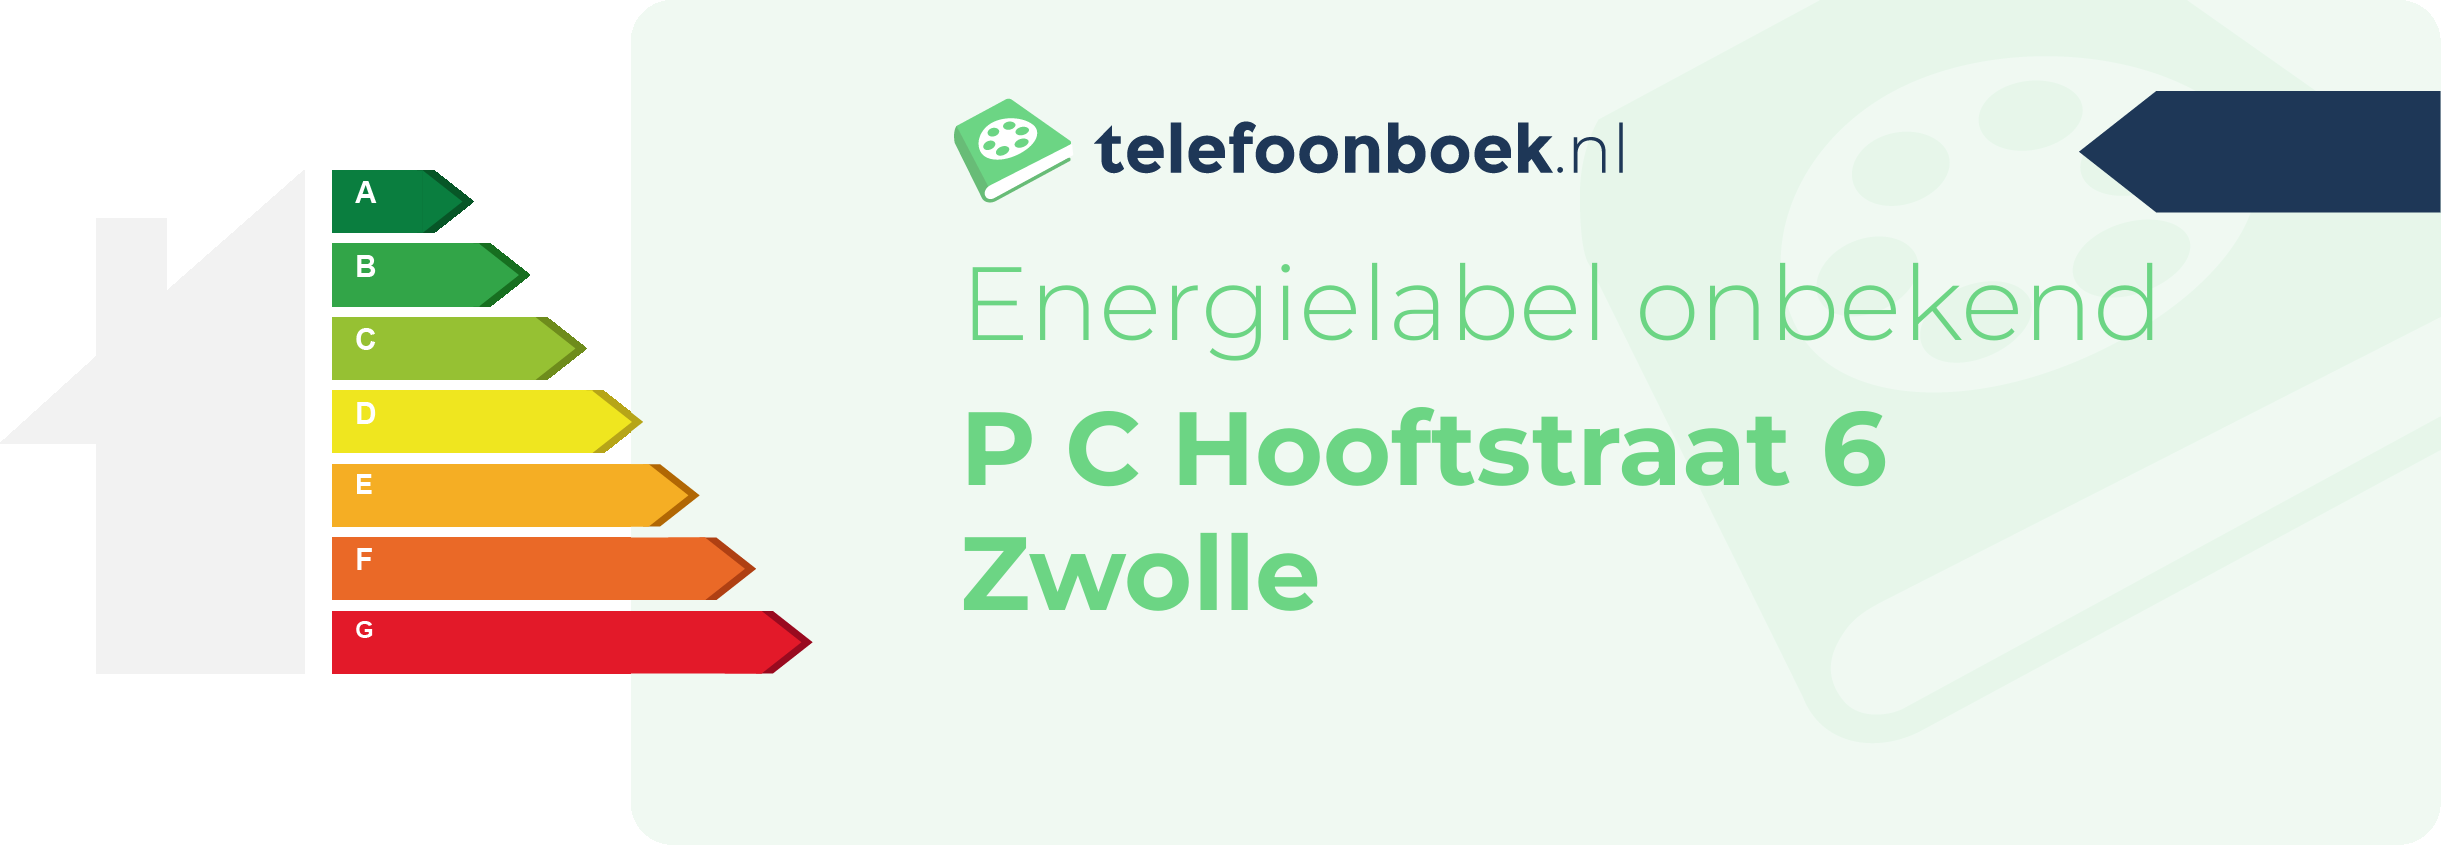 Energielabel P C Hooftstraat 6 Zwolle